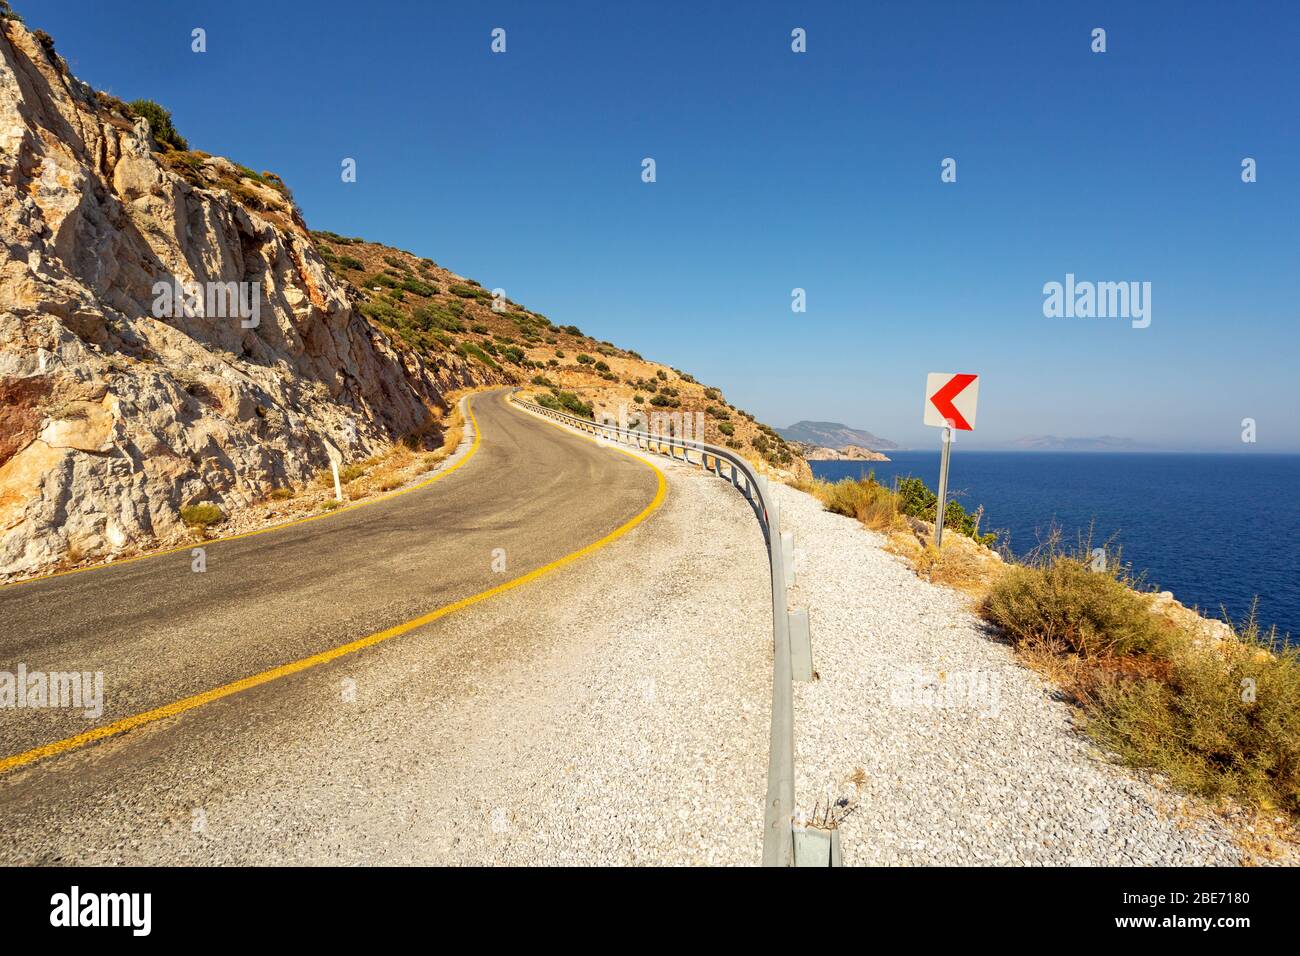 Curva strada asfaltata mediterranea e cartello curva in una calda giornata di sole. Datca, Turchia. Foto Stock